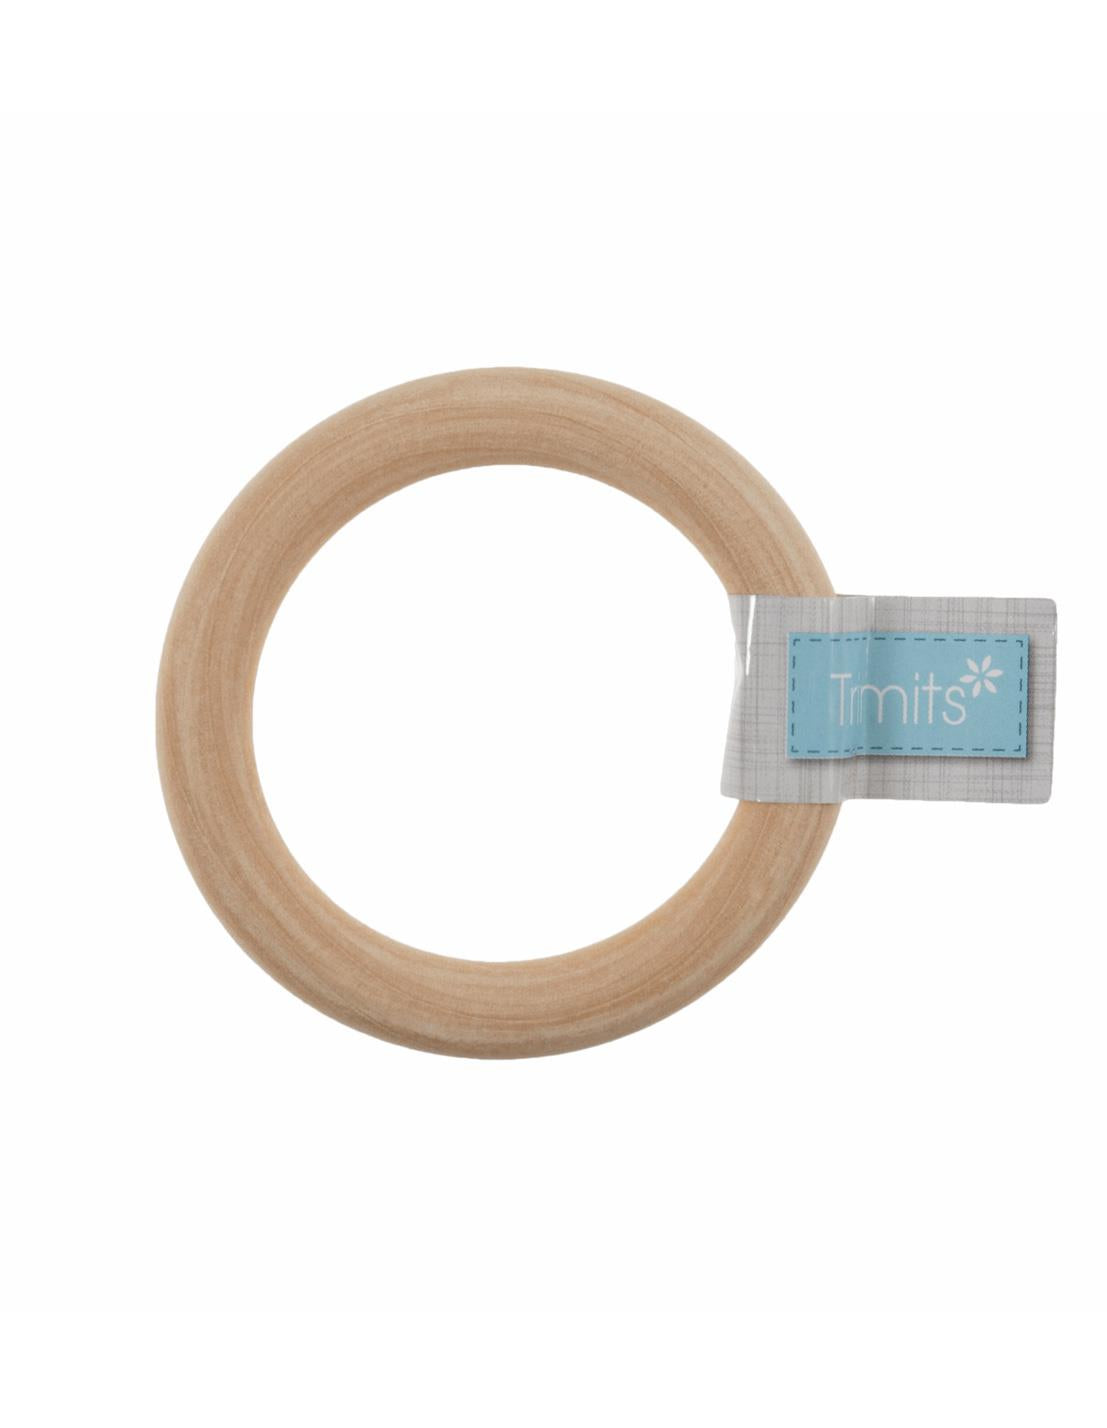 Trimits Birch Craft Ring (TRH22) round macrame hanger - 7cm